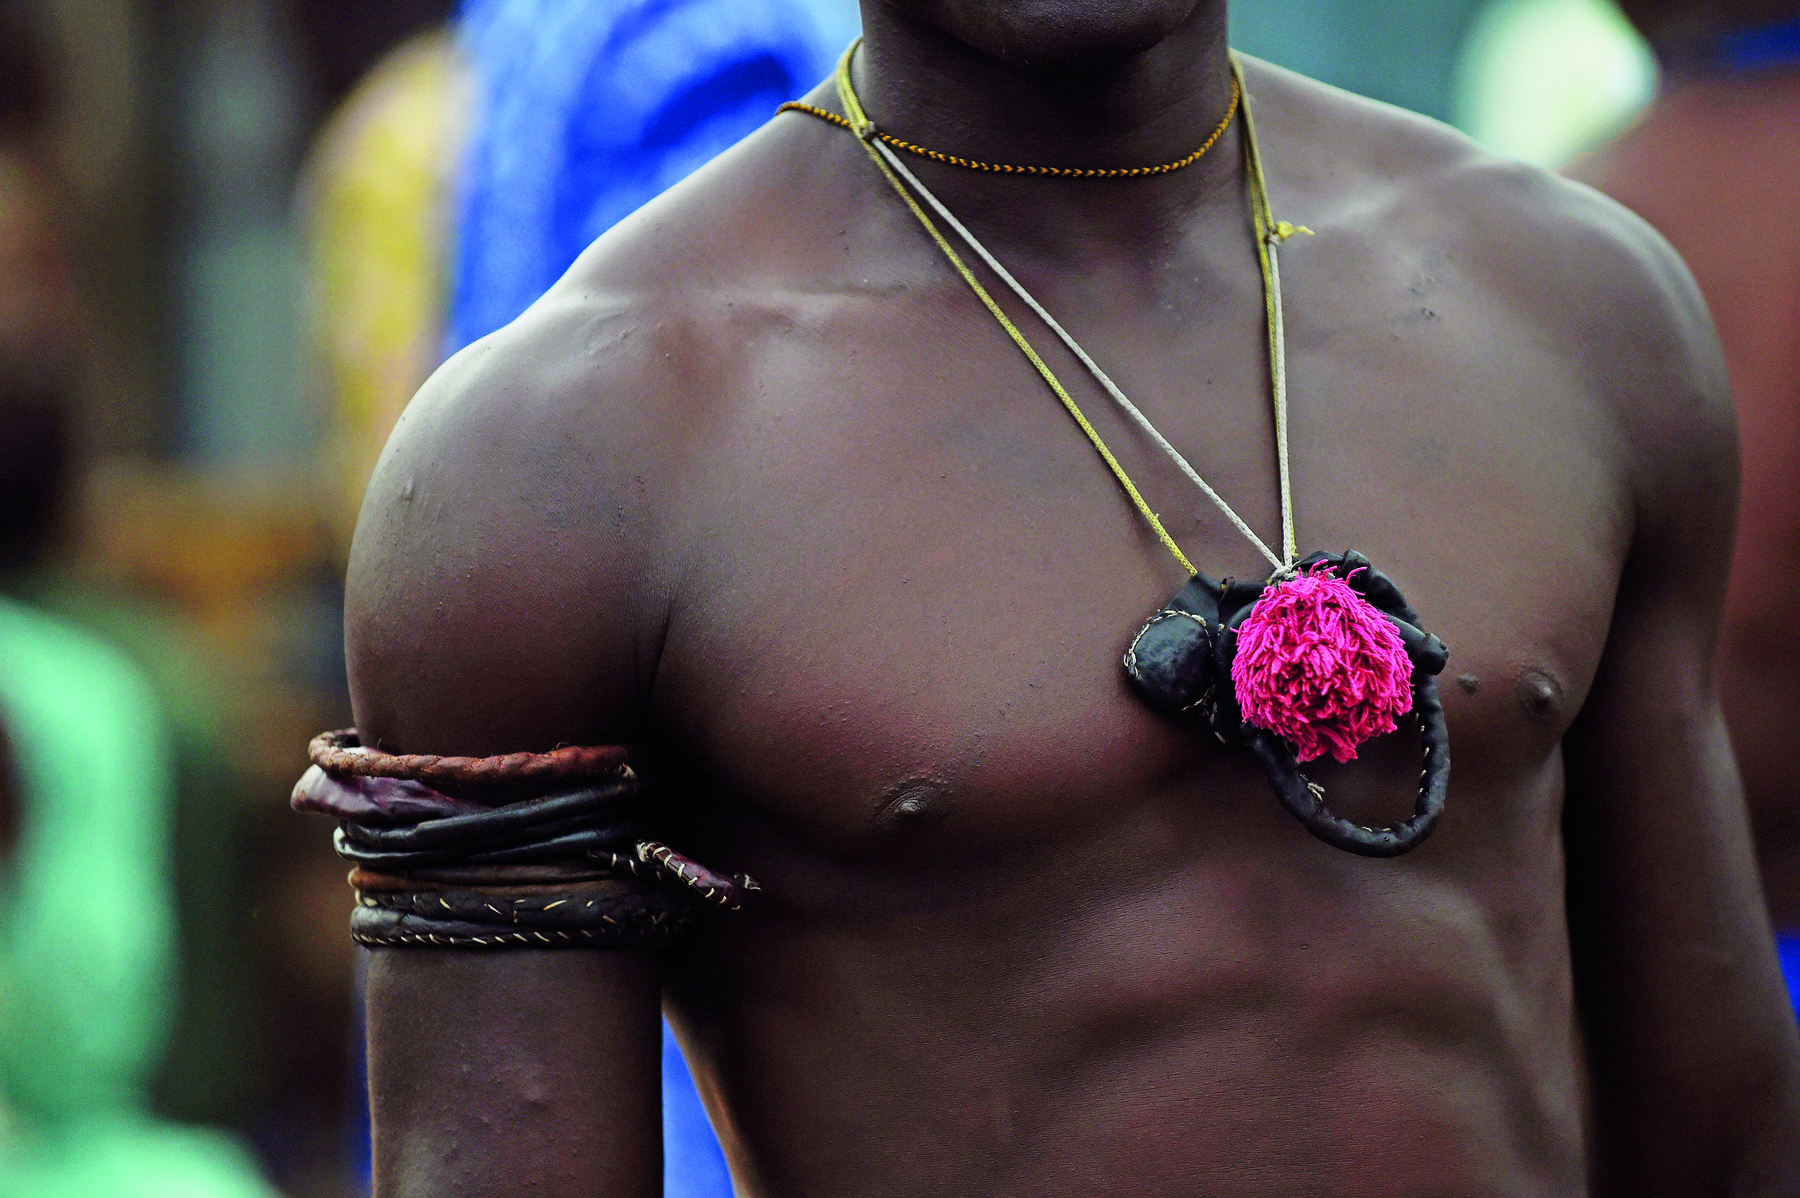 Fotografia. Homem sem camiseta usando um amuleto preto e vermelho no pescoço. Em seu braço direito há adornos com cordões coloridos.